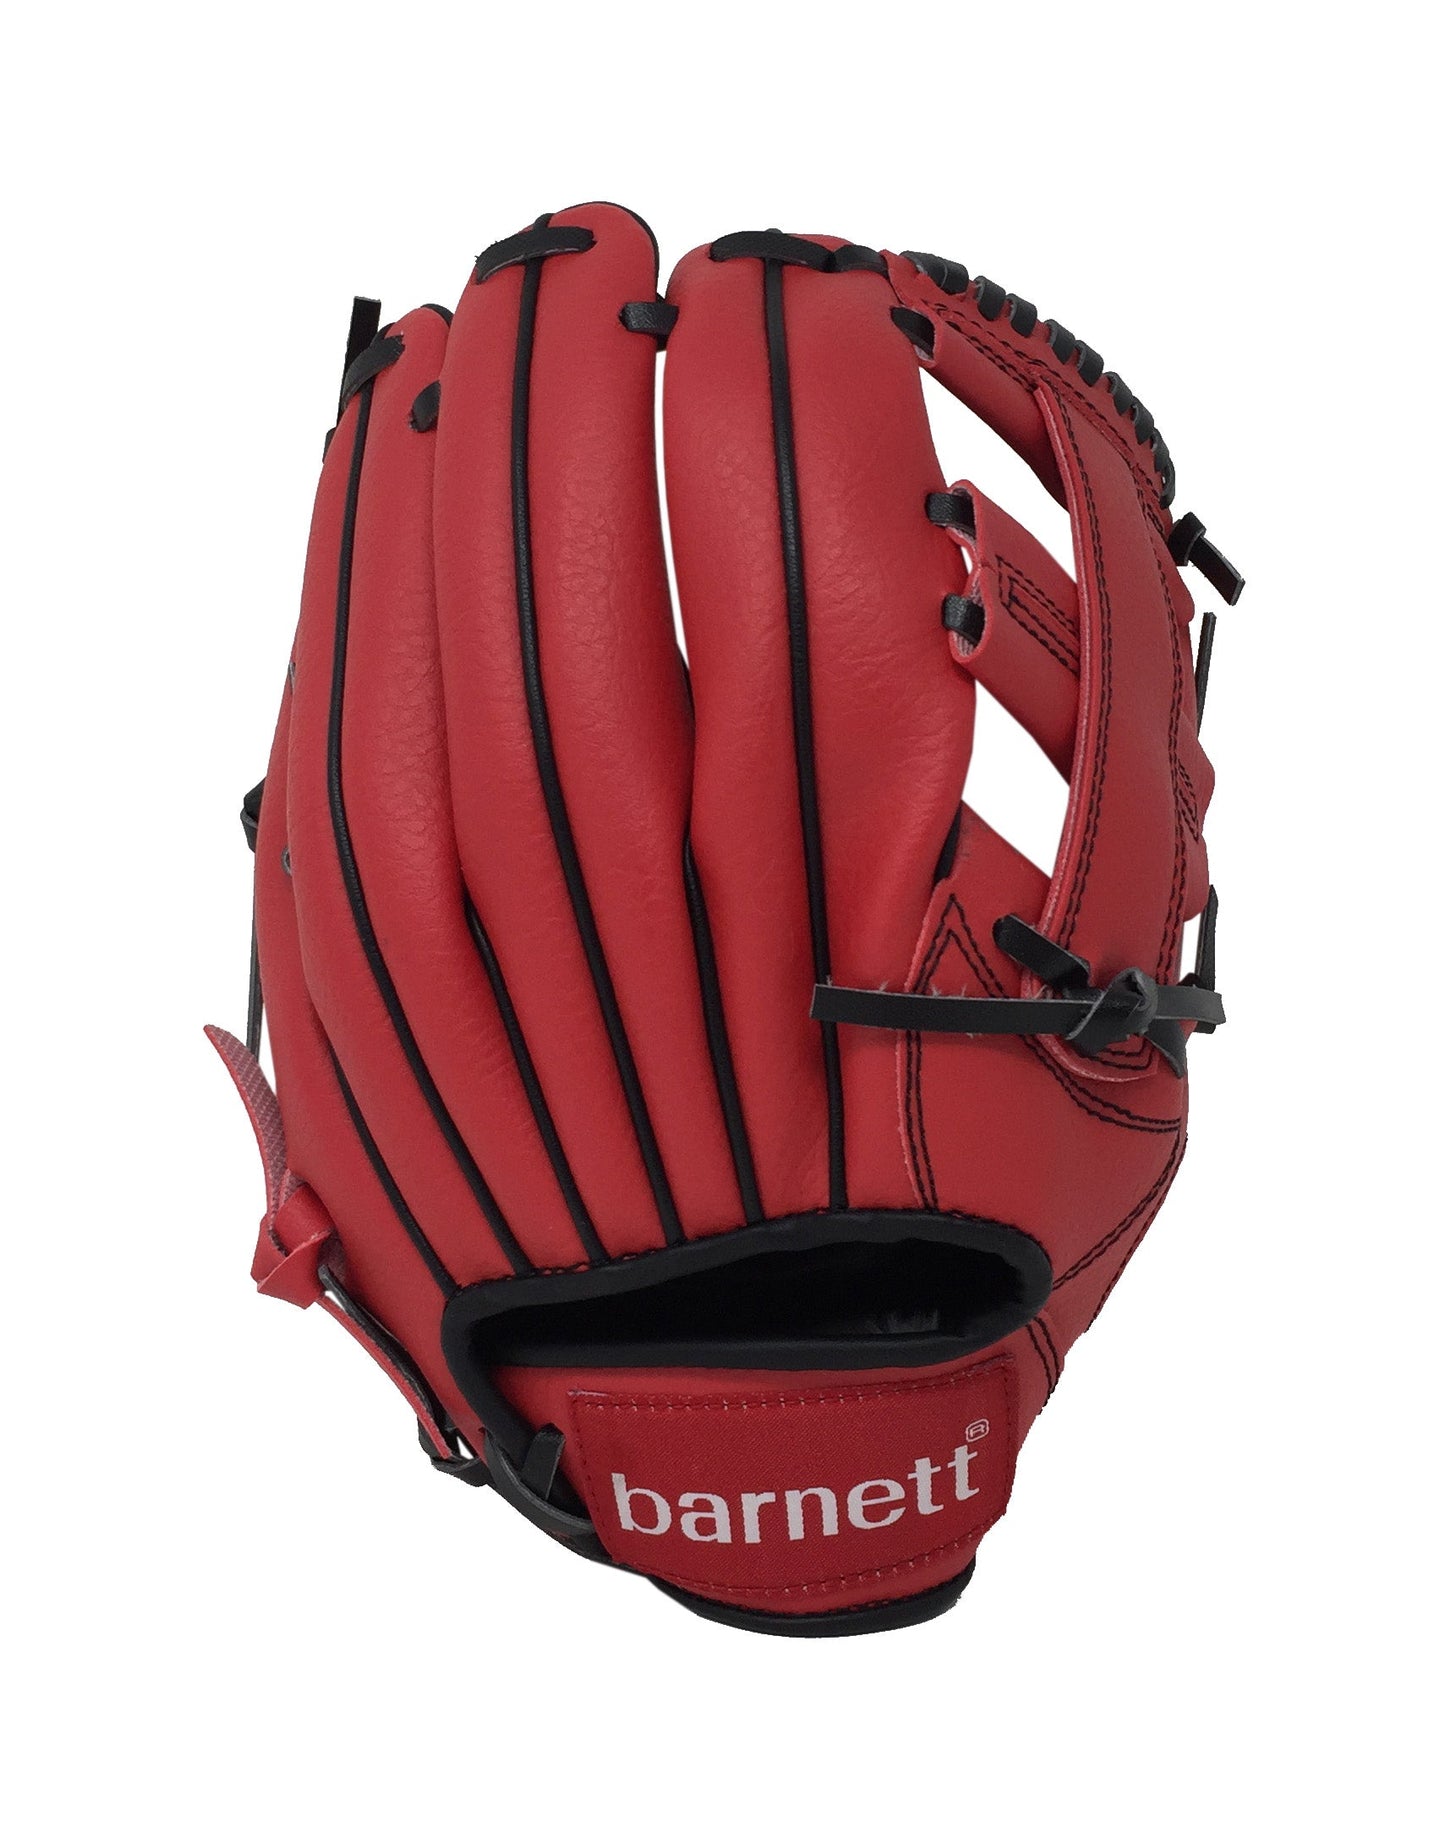 JL-110 - Gant de baseball, champ extérieur, polyuréthane, taille 11", rouge